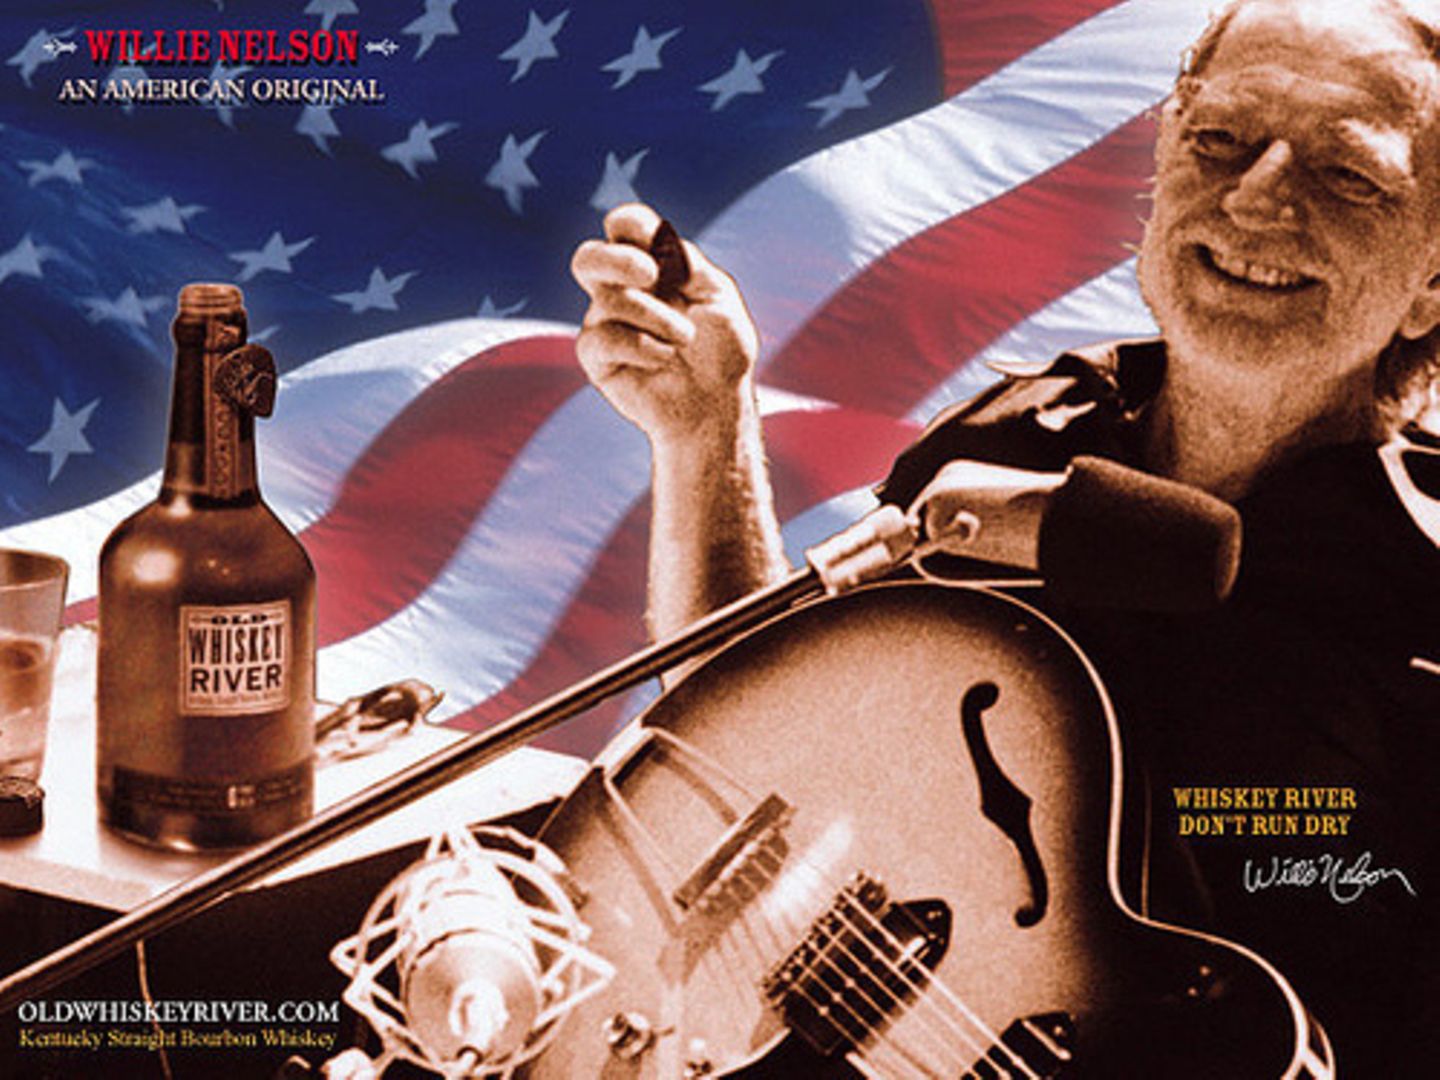 Dass Willie Nelsson kein Wein anbaut ist klar, oder? Seine Whiskey-Marke trägt den Namen "Old Whiskey River Bourbon", angelehnt an seinen Song "Whiskey River". Zu jeder bestellten Flasche liefert er übrigens einen Satz neue Gitarrensaiten mit.